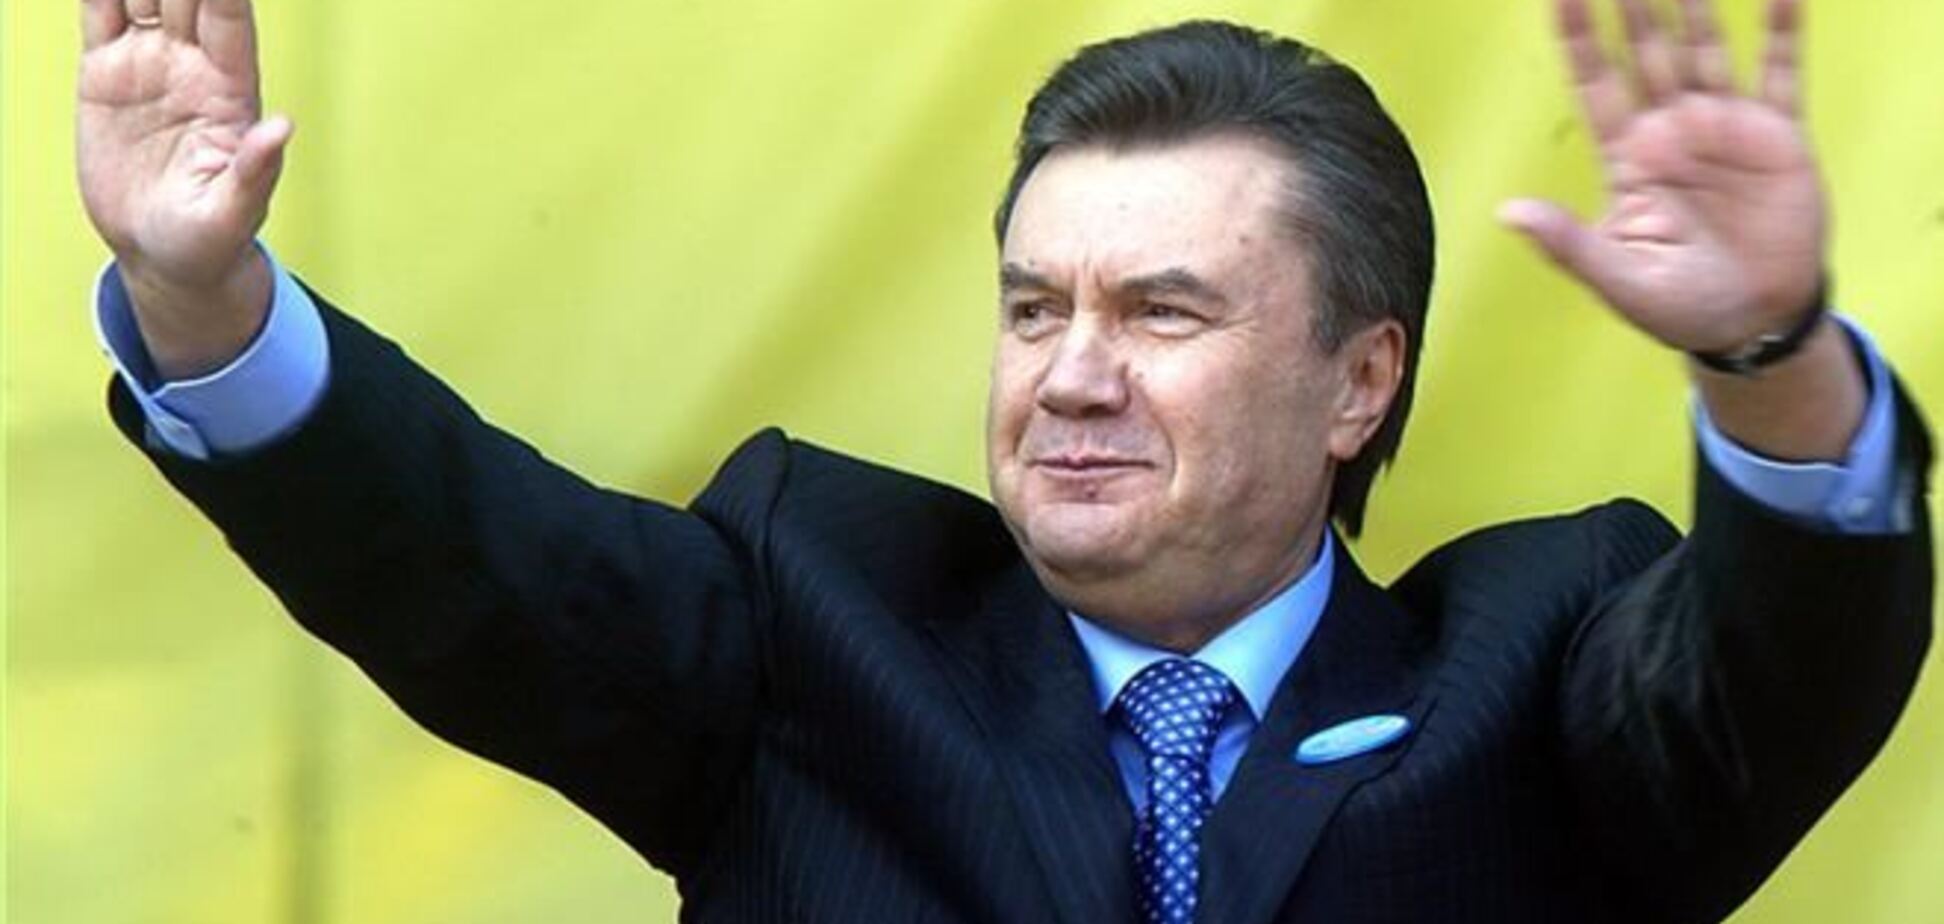 Експерт: заява Януковича про президенства не має під собою юридичних підстав